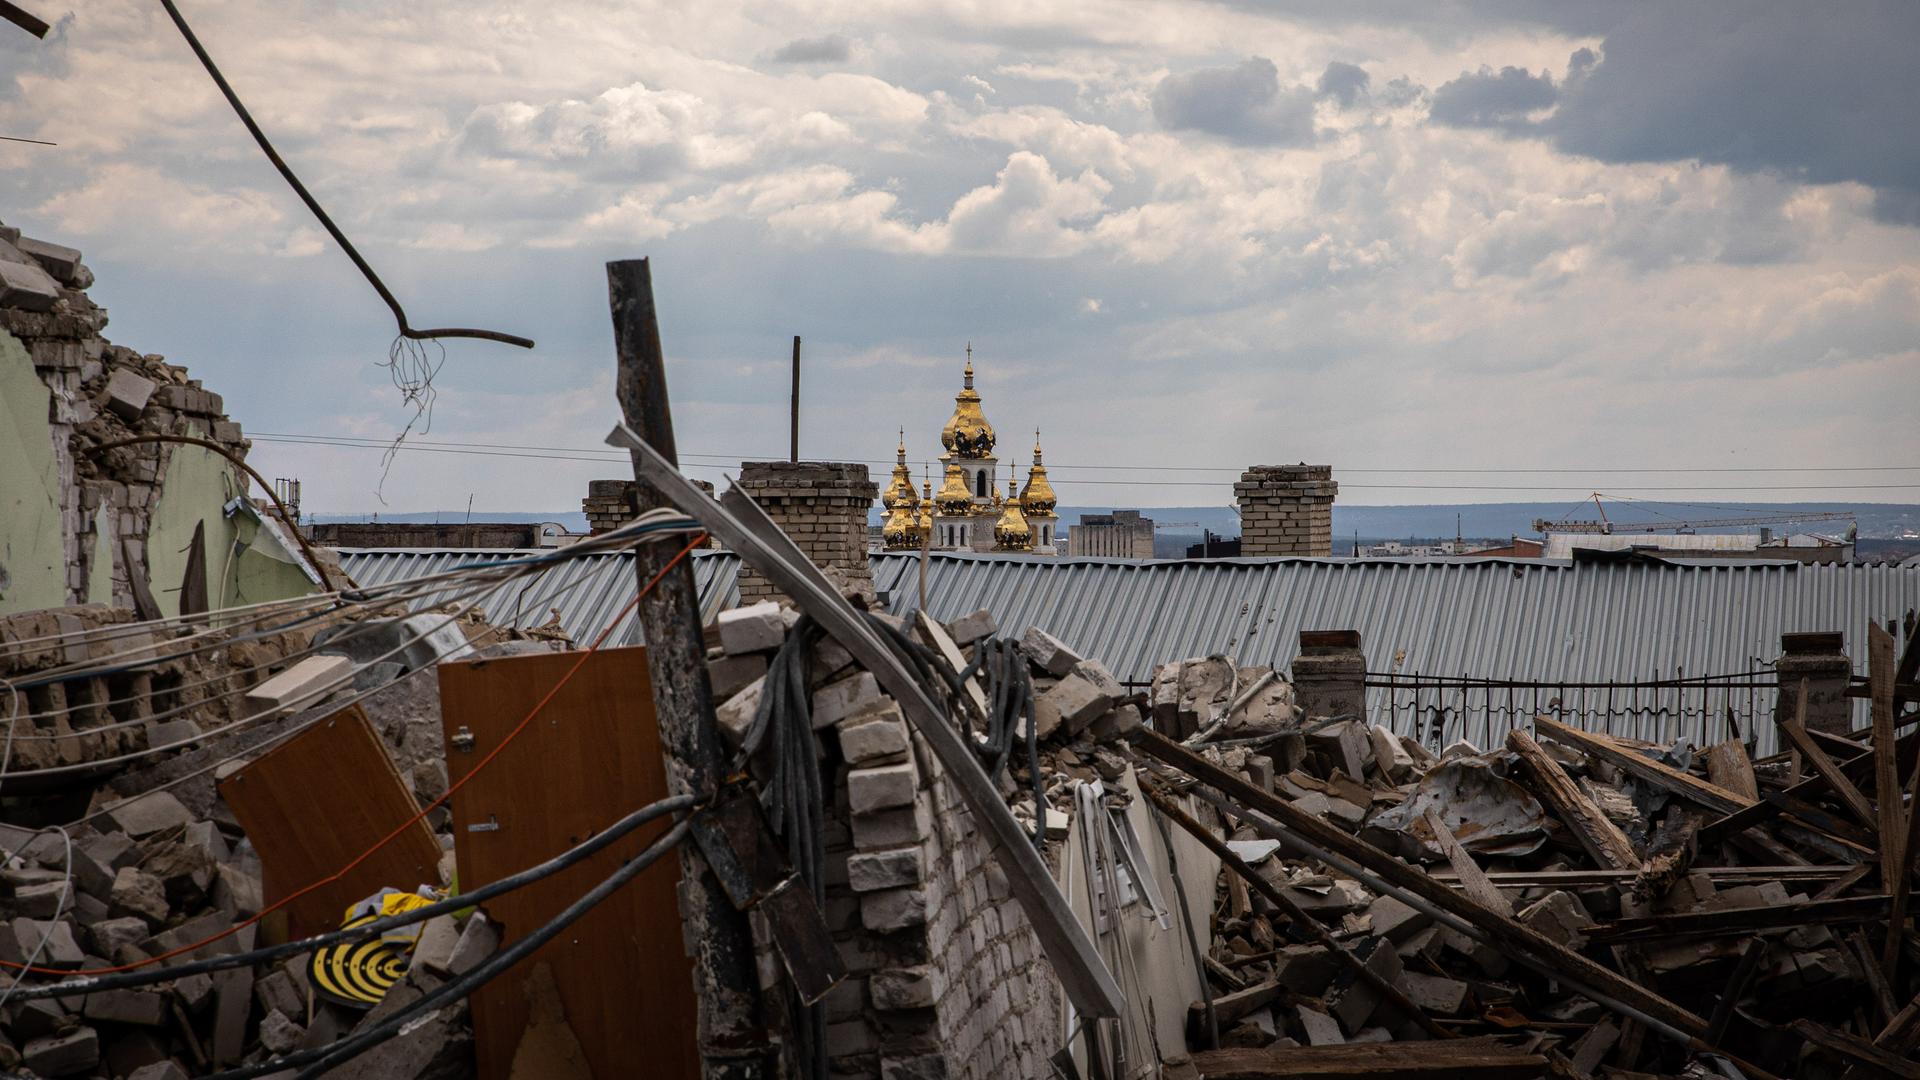 Die goldenen Türme eines orthodoxen Klosters sind im Hintergrund einer zerbombten Stadt zu sehen